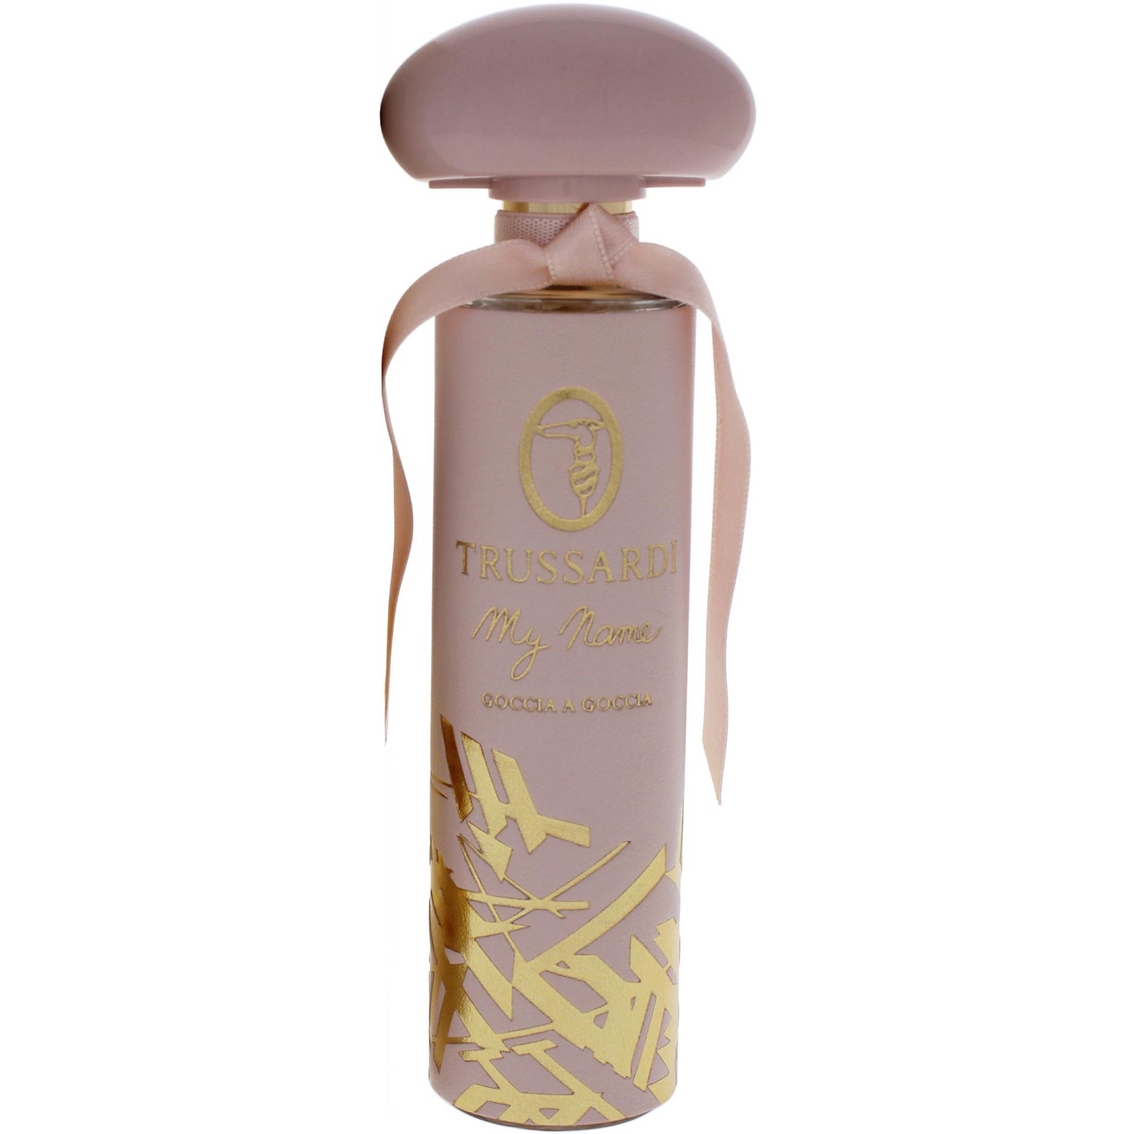 My Name Goccia A Goccia By Trussardi For Women 1.7 Oz. Eau De Parfum Splash  | Women's Fragrances | Beauty & Health | Shop The Exchange